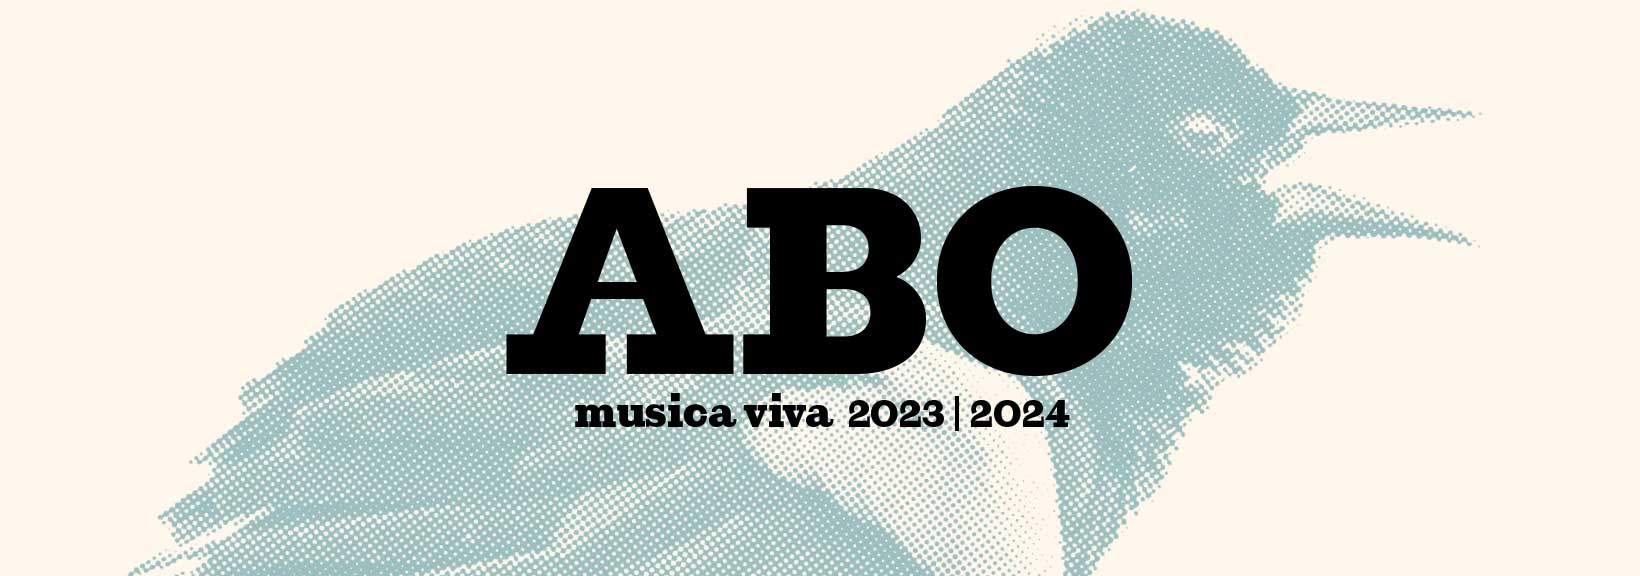 Abo | Banner musica viva 23/24 © LM Berlin